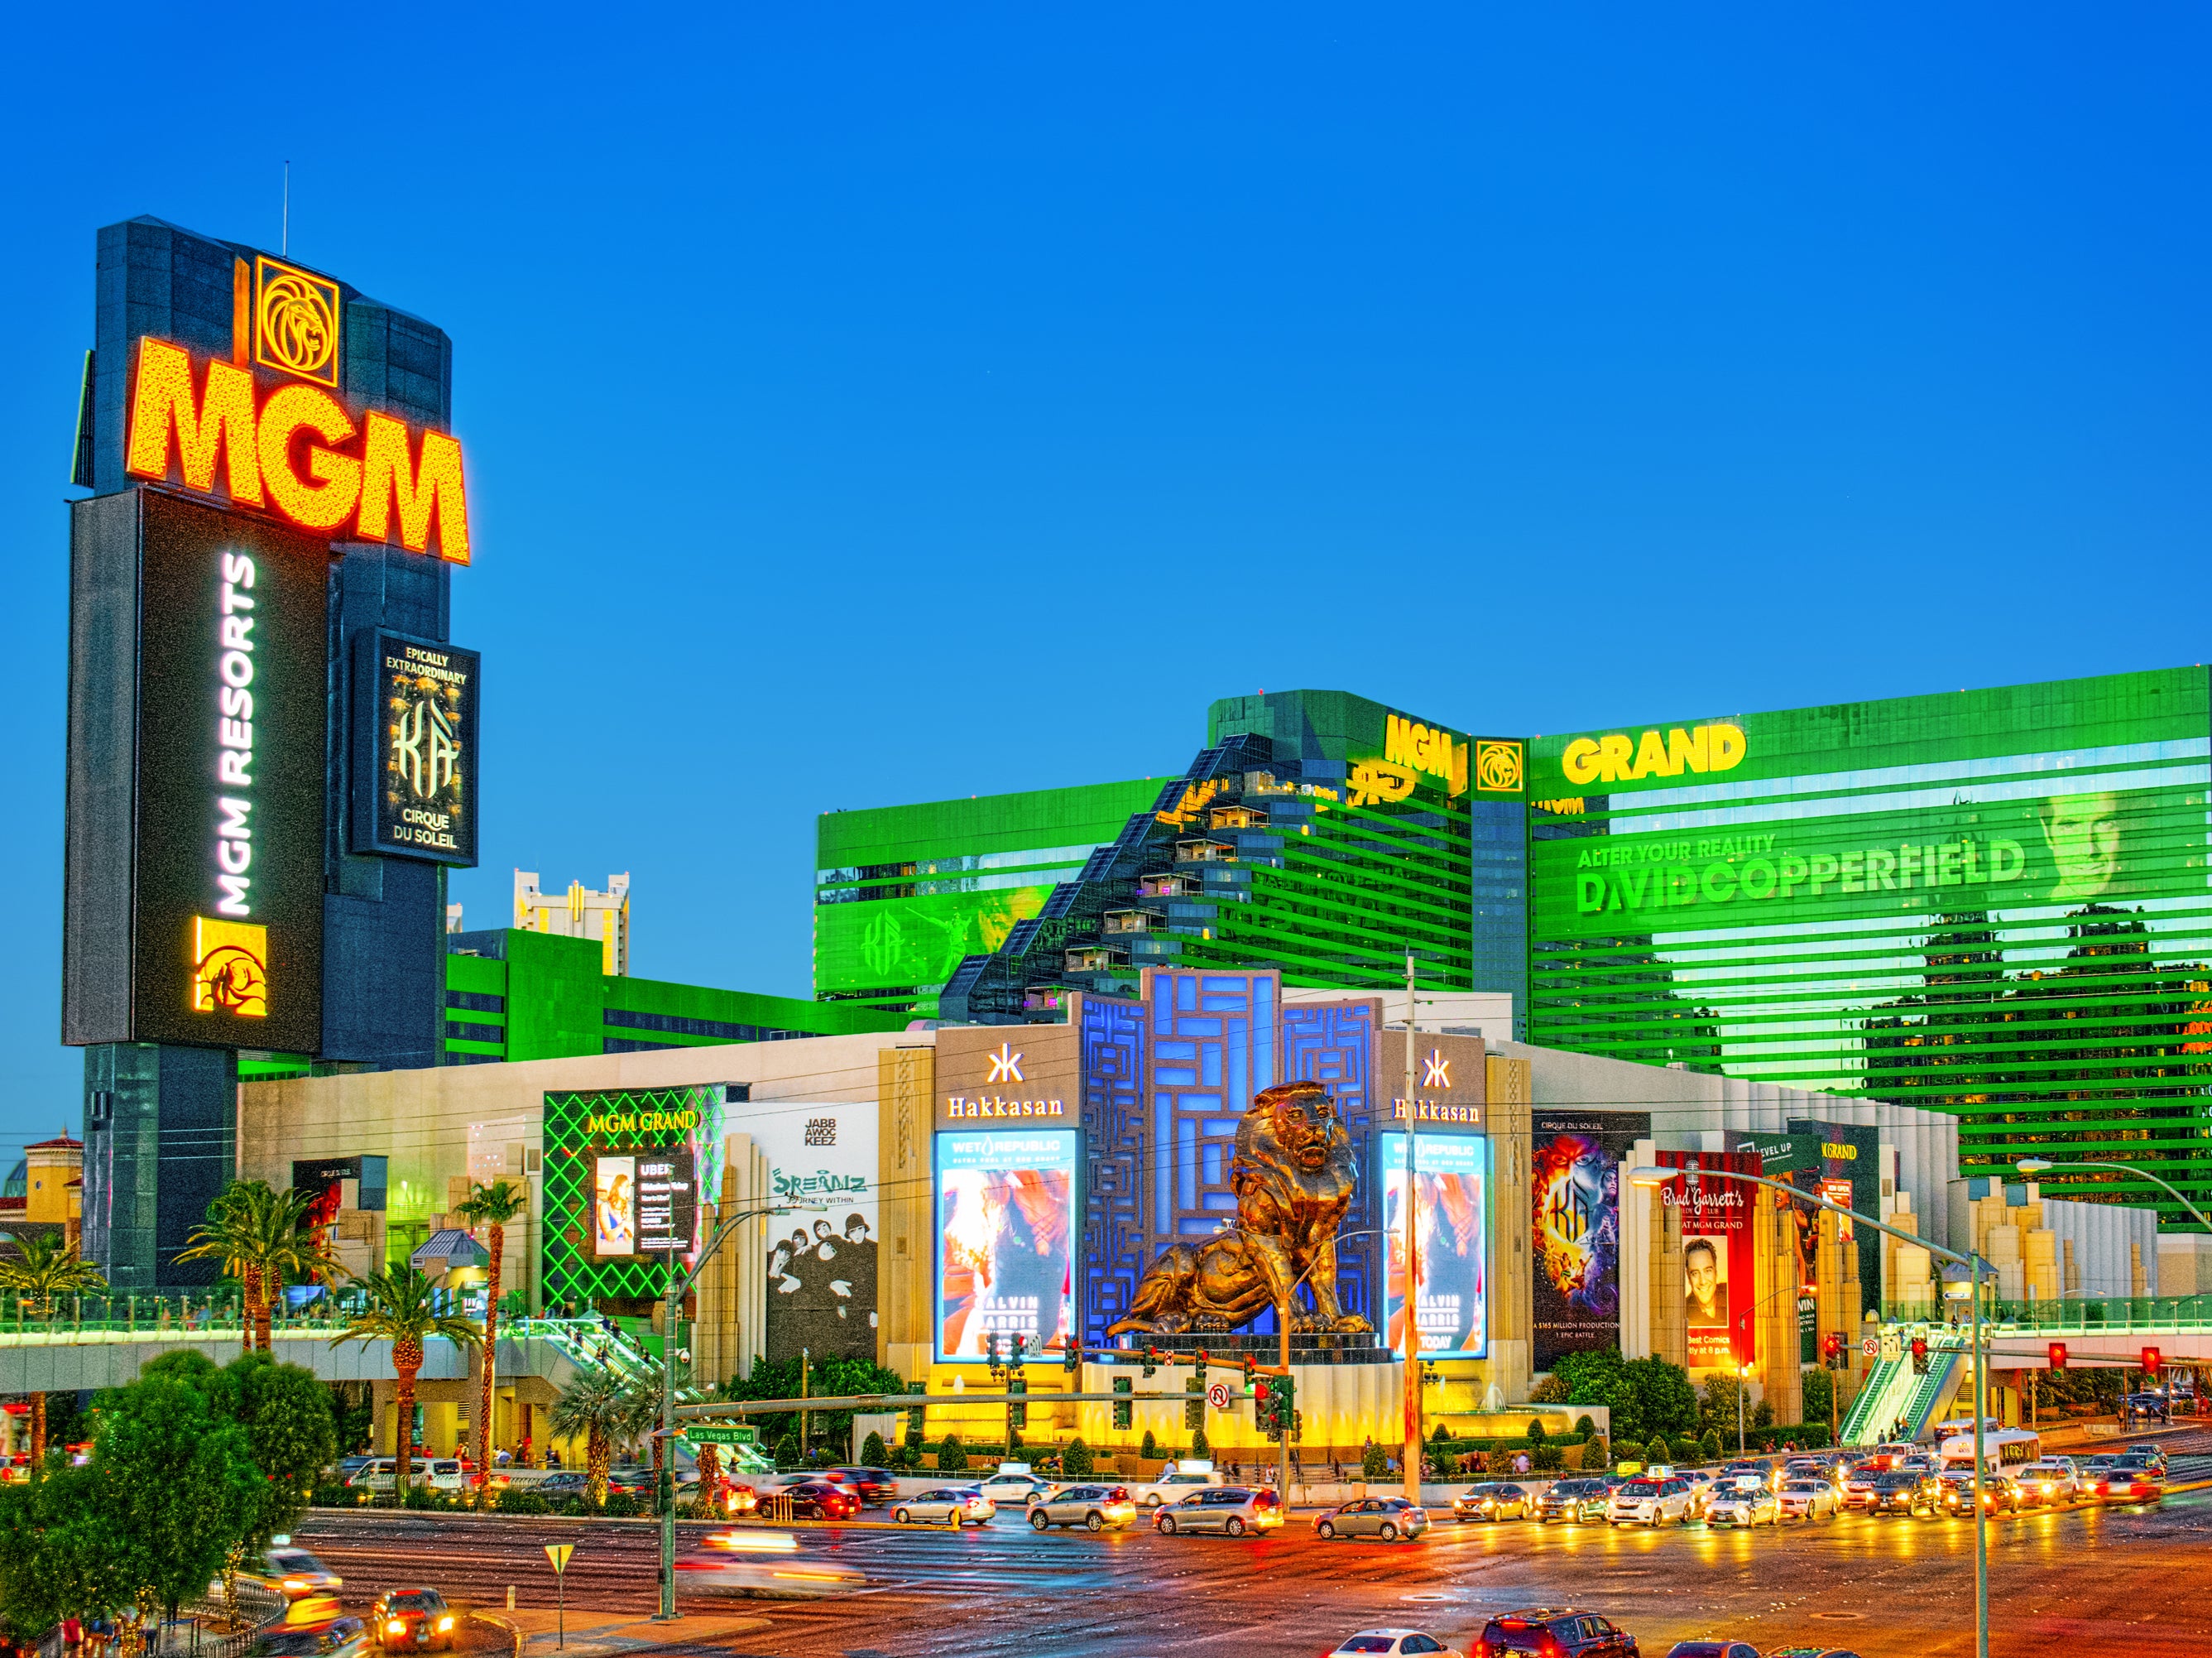 Imagen exterior del hotel y casino MGM Grand en Las Vegas